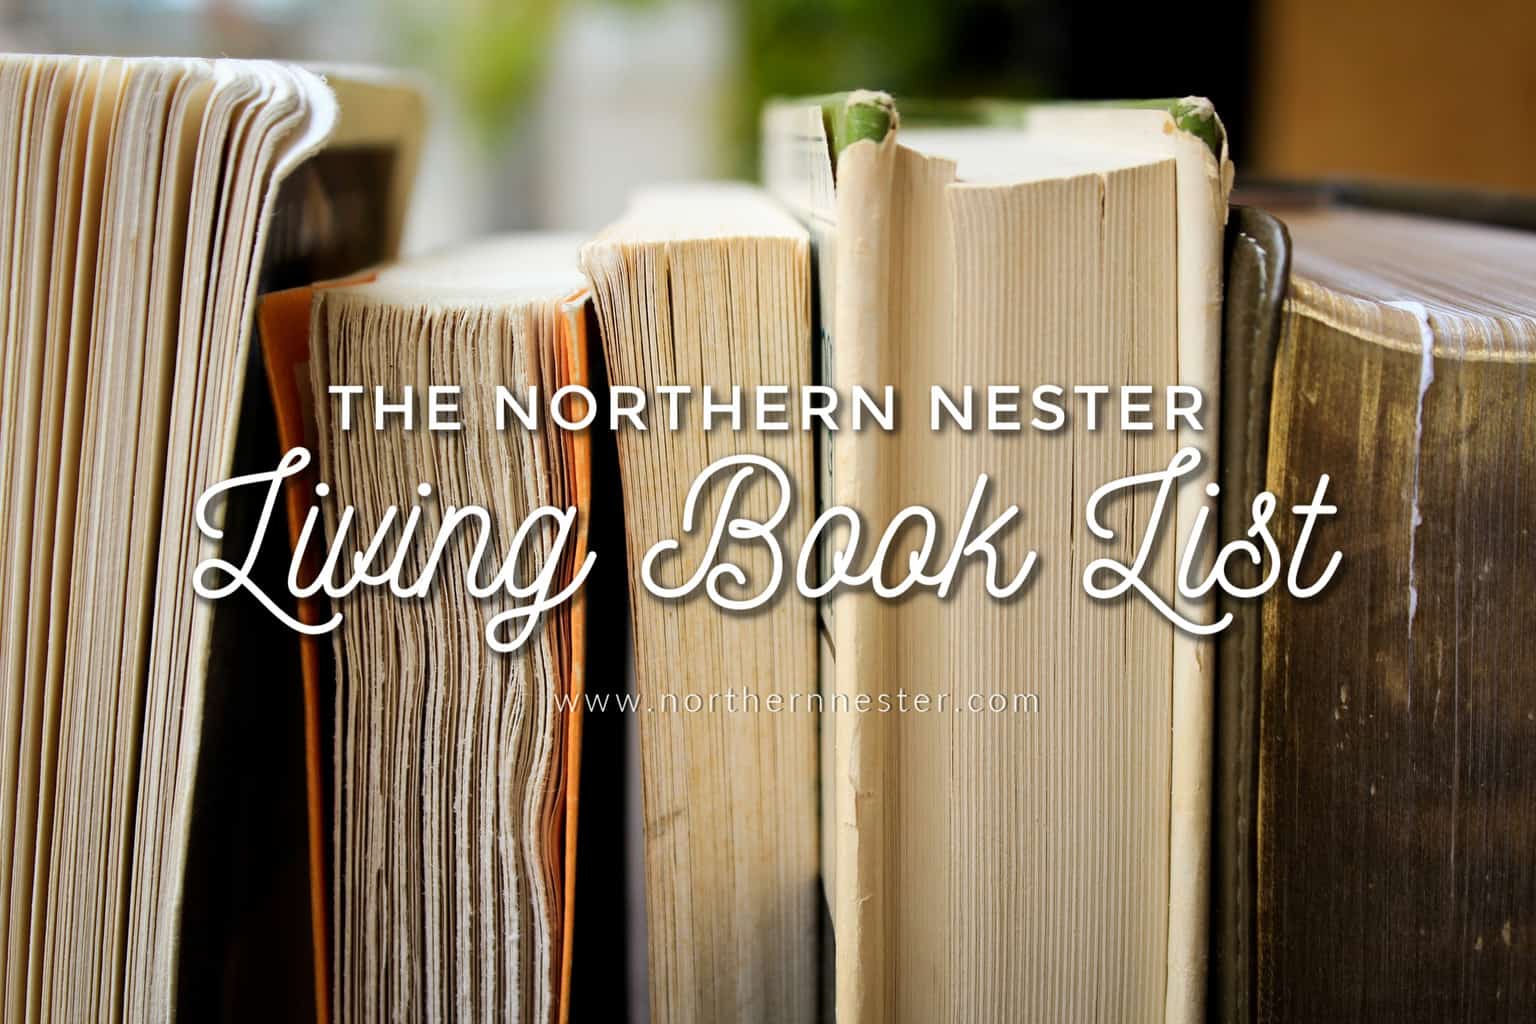 List of living books